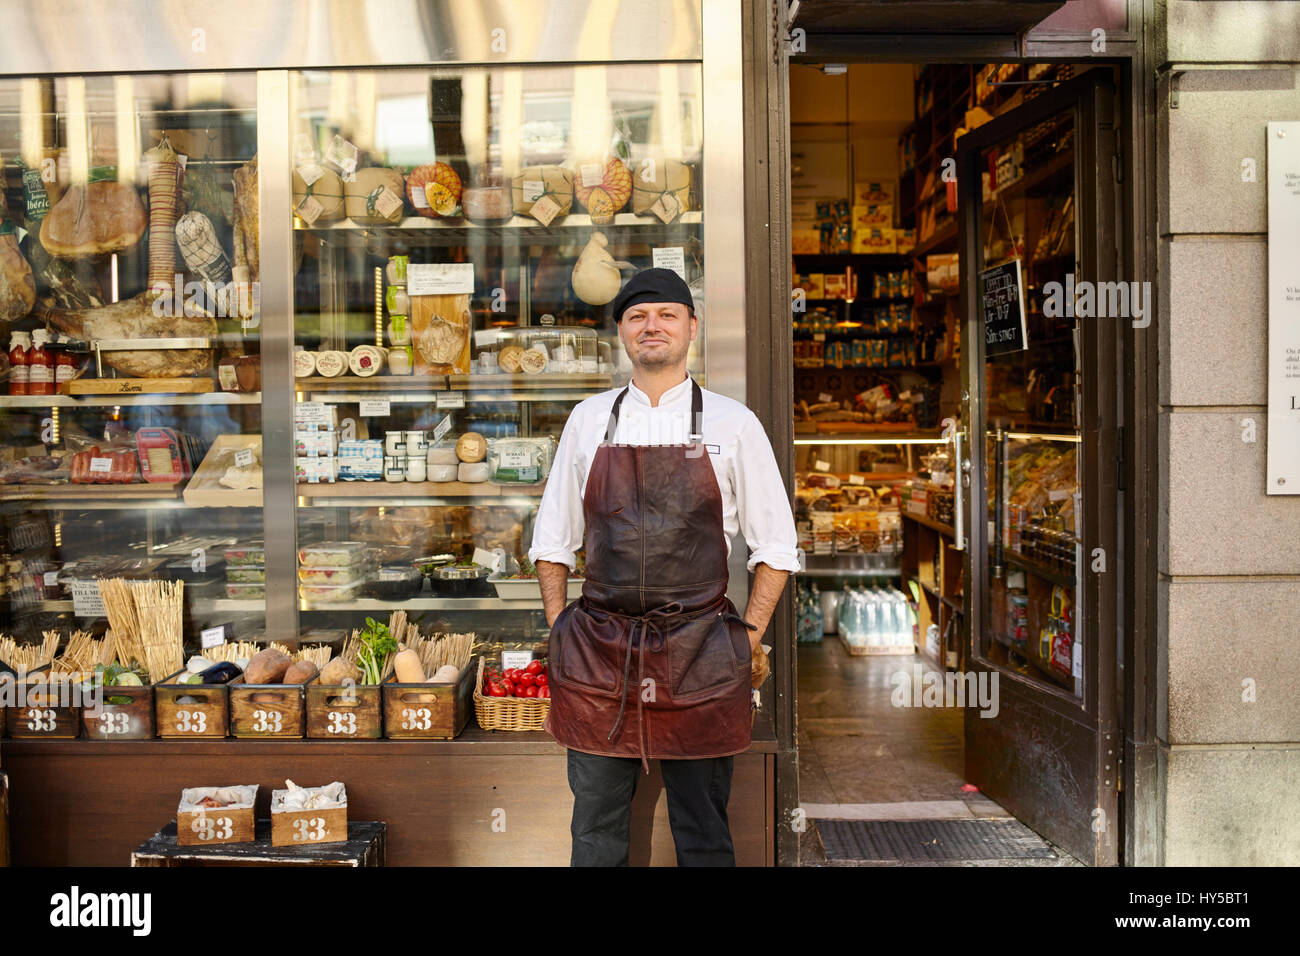 Suecia, el hombre en el delantal de pie en frente de la tienda Foto de stock